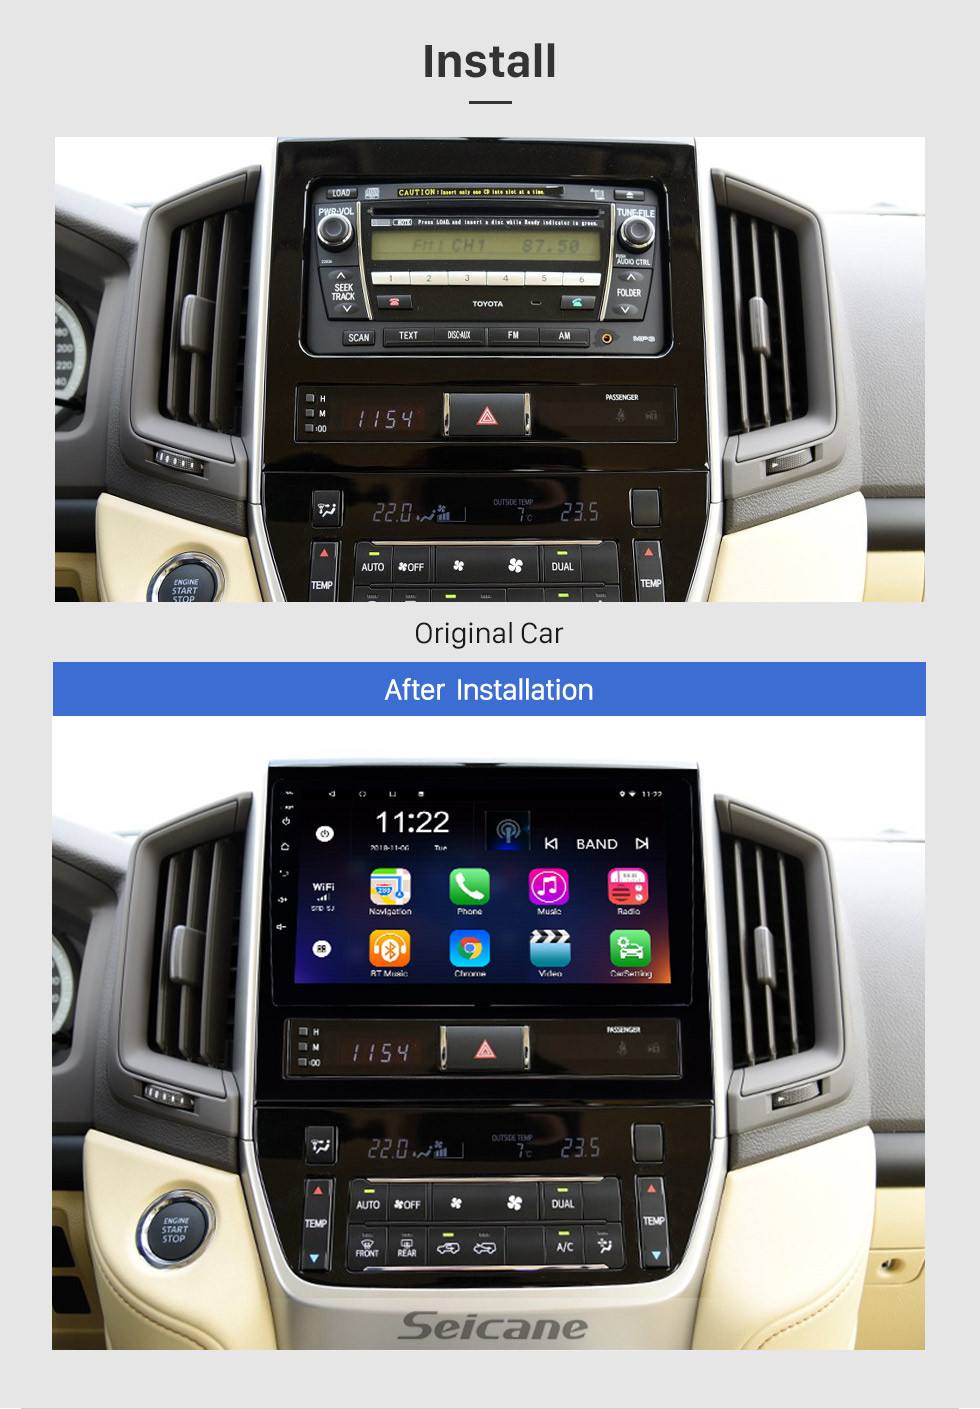 Seicane 9 pouces Android 10.0 radio à écran tactile Bluetooth système de navigation GPS Pour 2016 Toyota Land Cruiser 200 soutien TPMS DVR OBD II USB SD 3G WiFi caméra arrière Commande au volant HD 1080P vidéo AUX